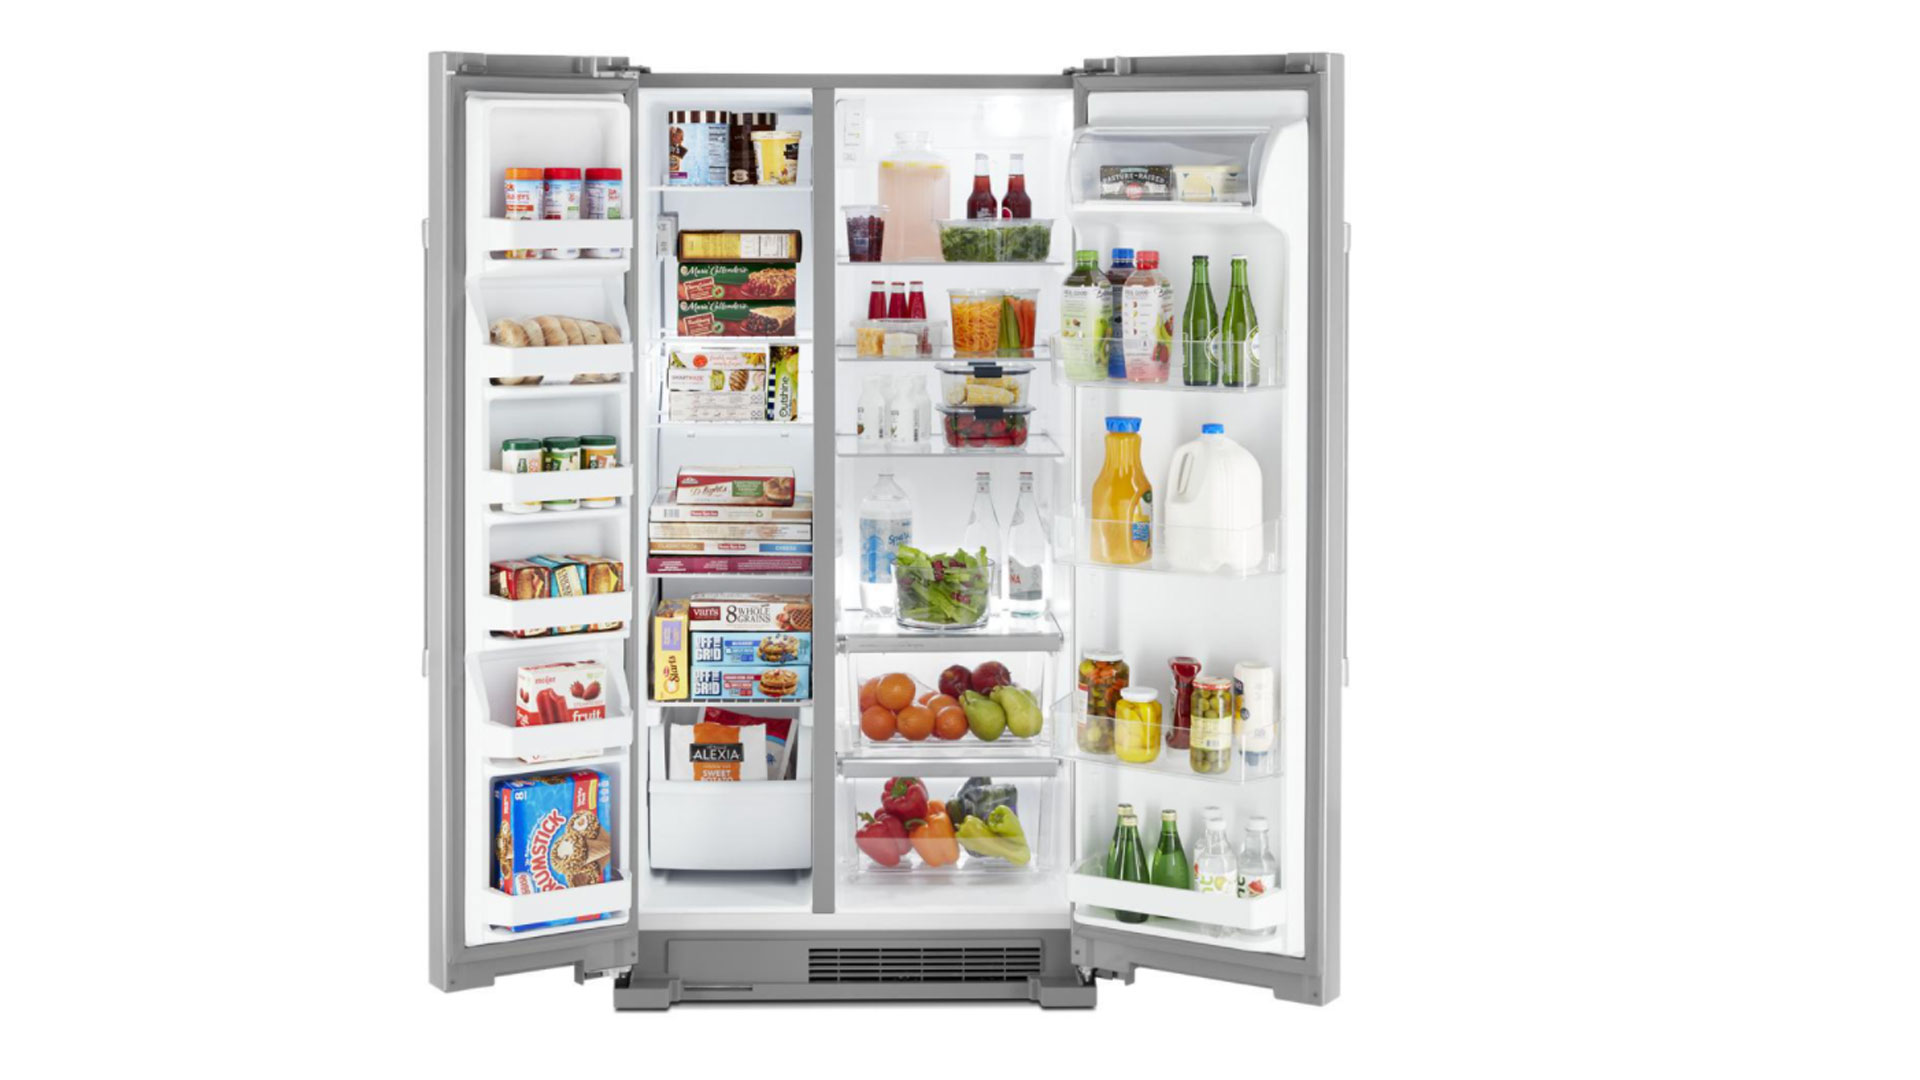 Maytag MSS25N4MKZ : L'image montre un réfrigérateur